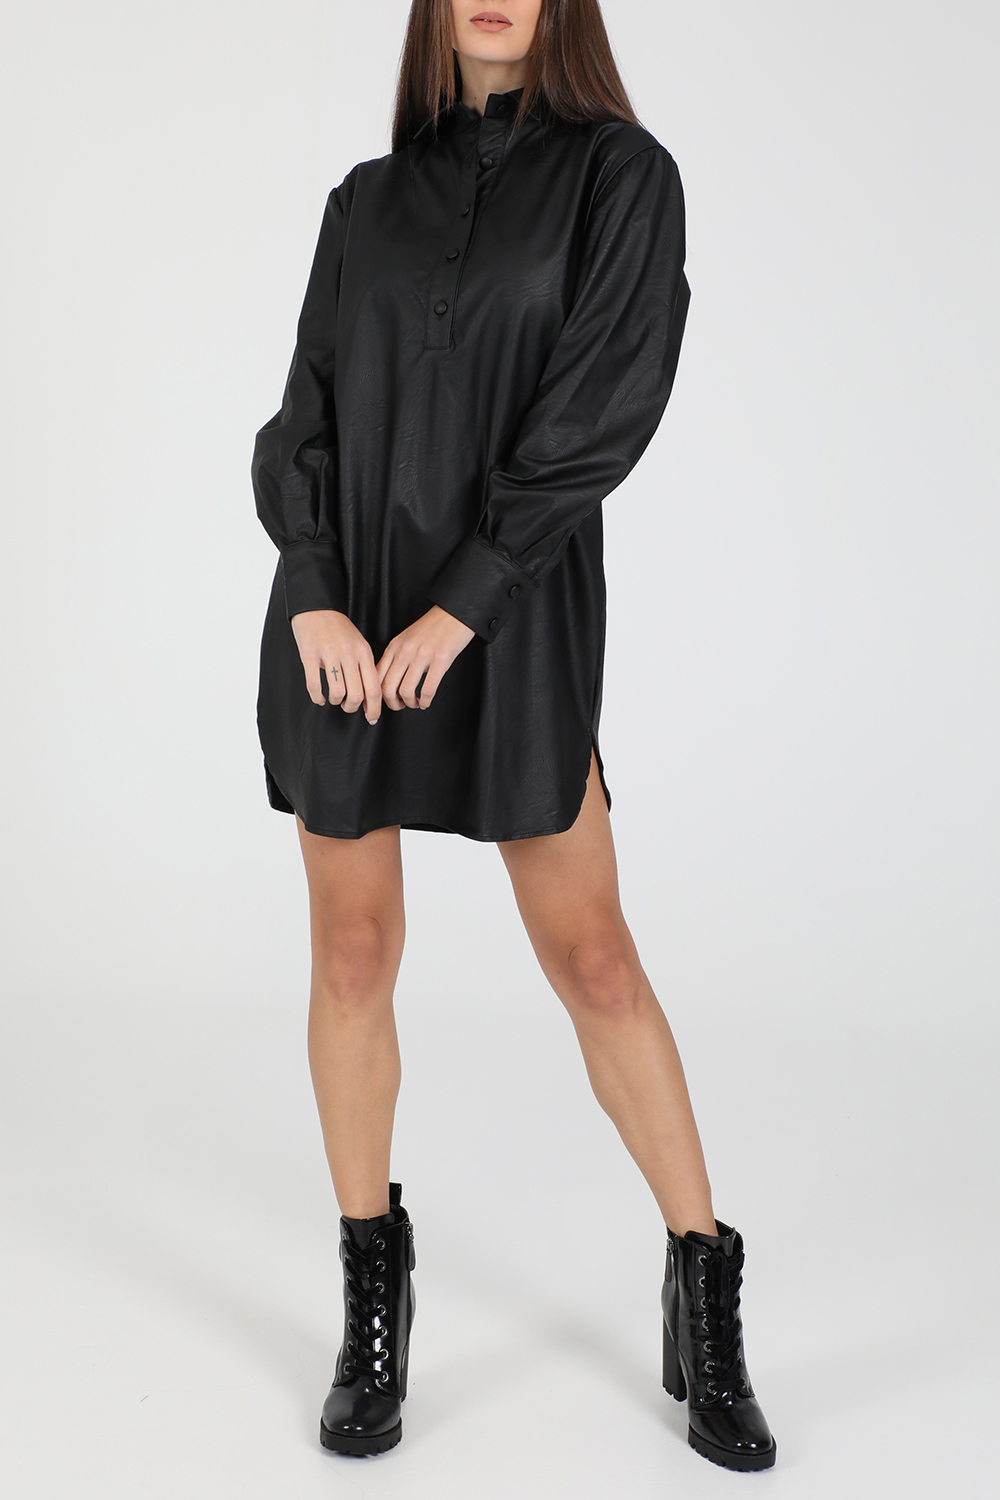 Γυναικεία/Ρούχα/Φόρεματα/Μίνι LA DOLLS - Γυναικείο mini φόρεμα LA DOLLS MORGAN μαύρο